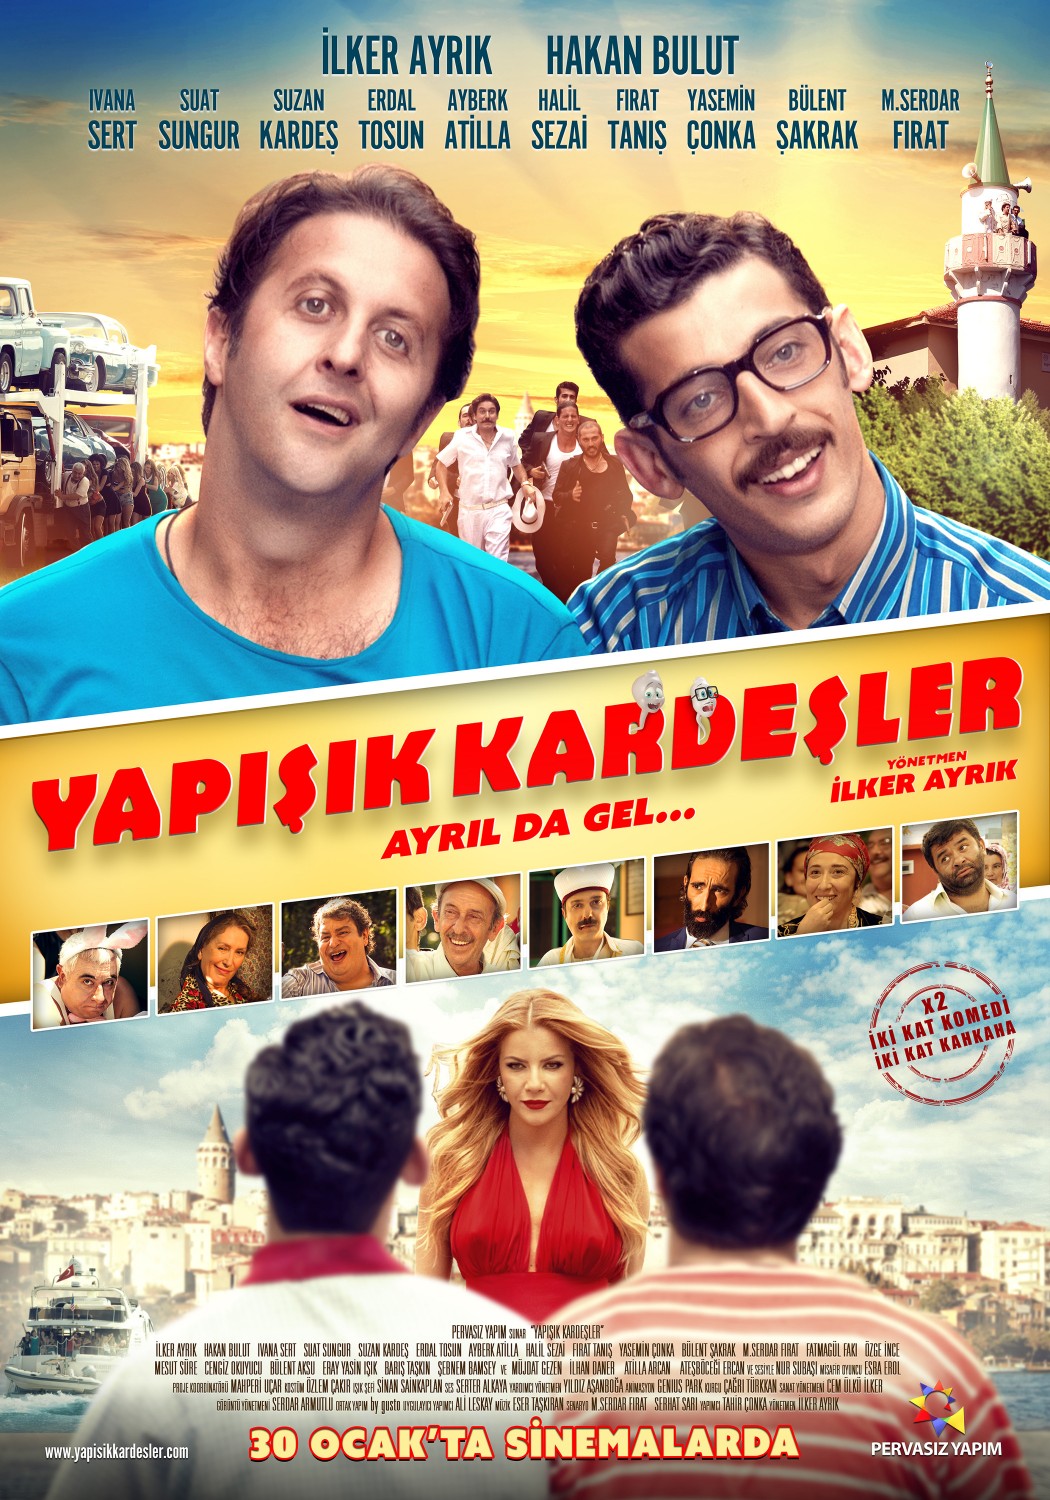 Extra Large Movie Poster Image for Yapisik Kardesler 